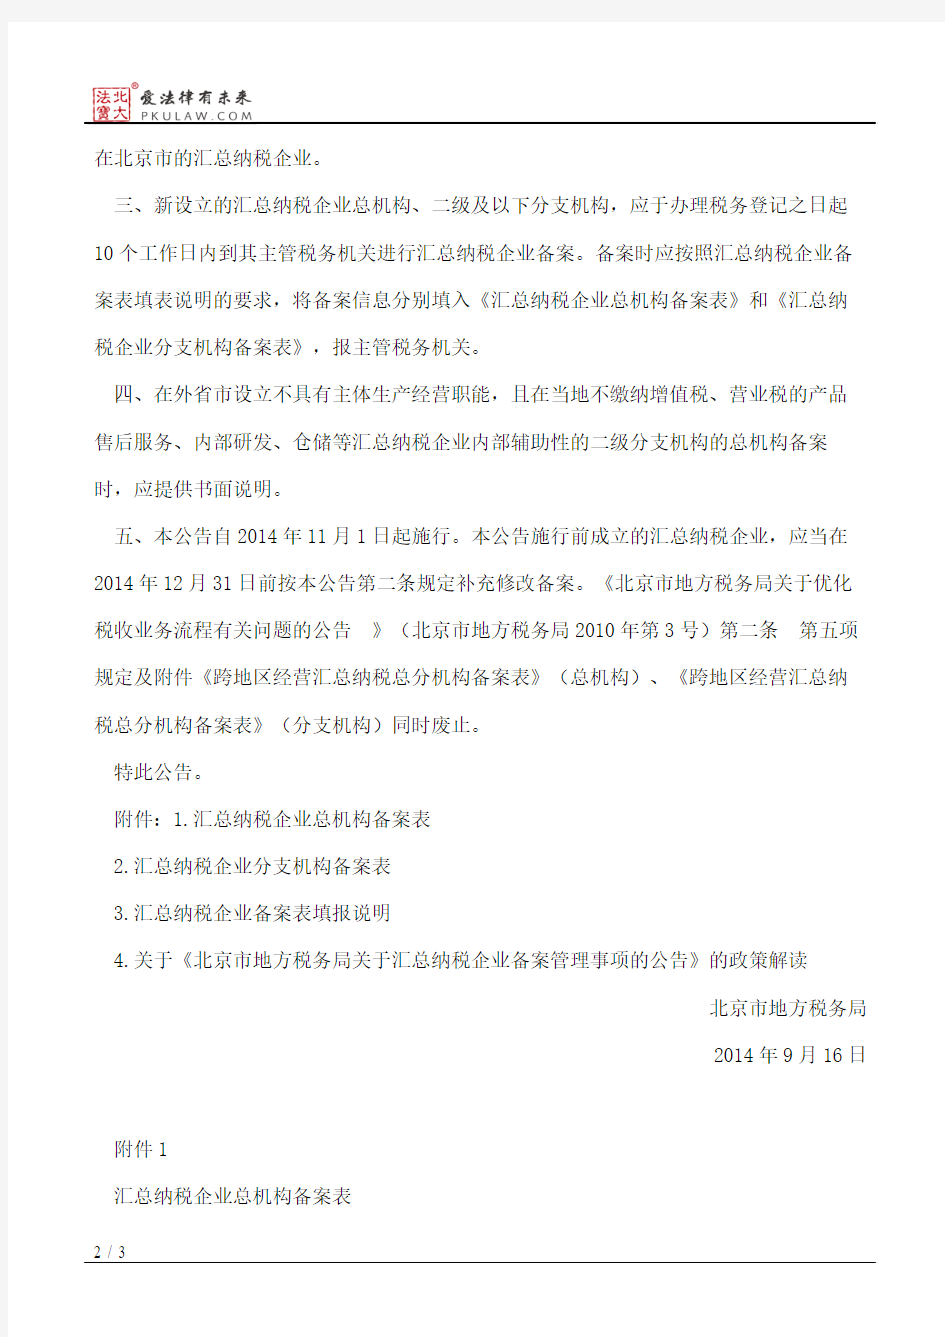 北京市地方税务局关于汇总纳税企业备案管理事项的公告